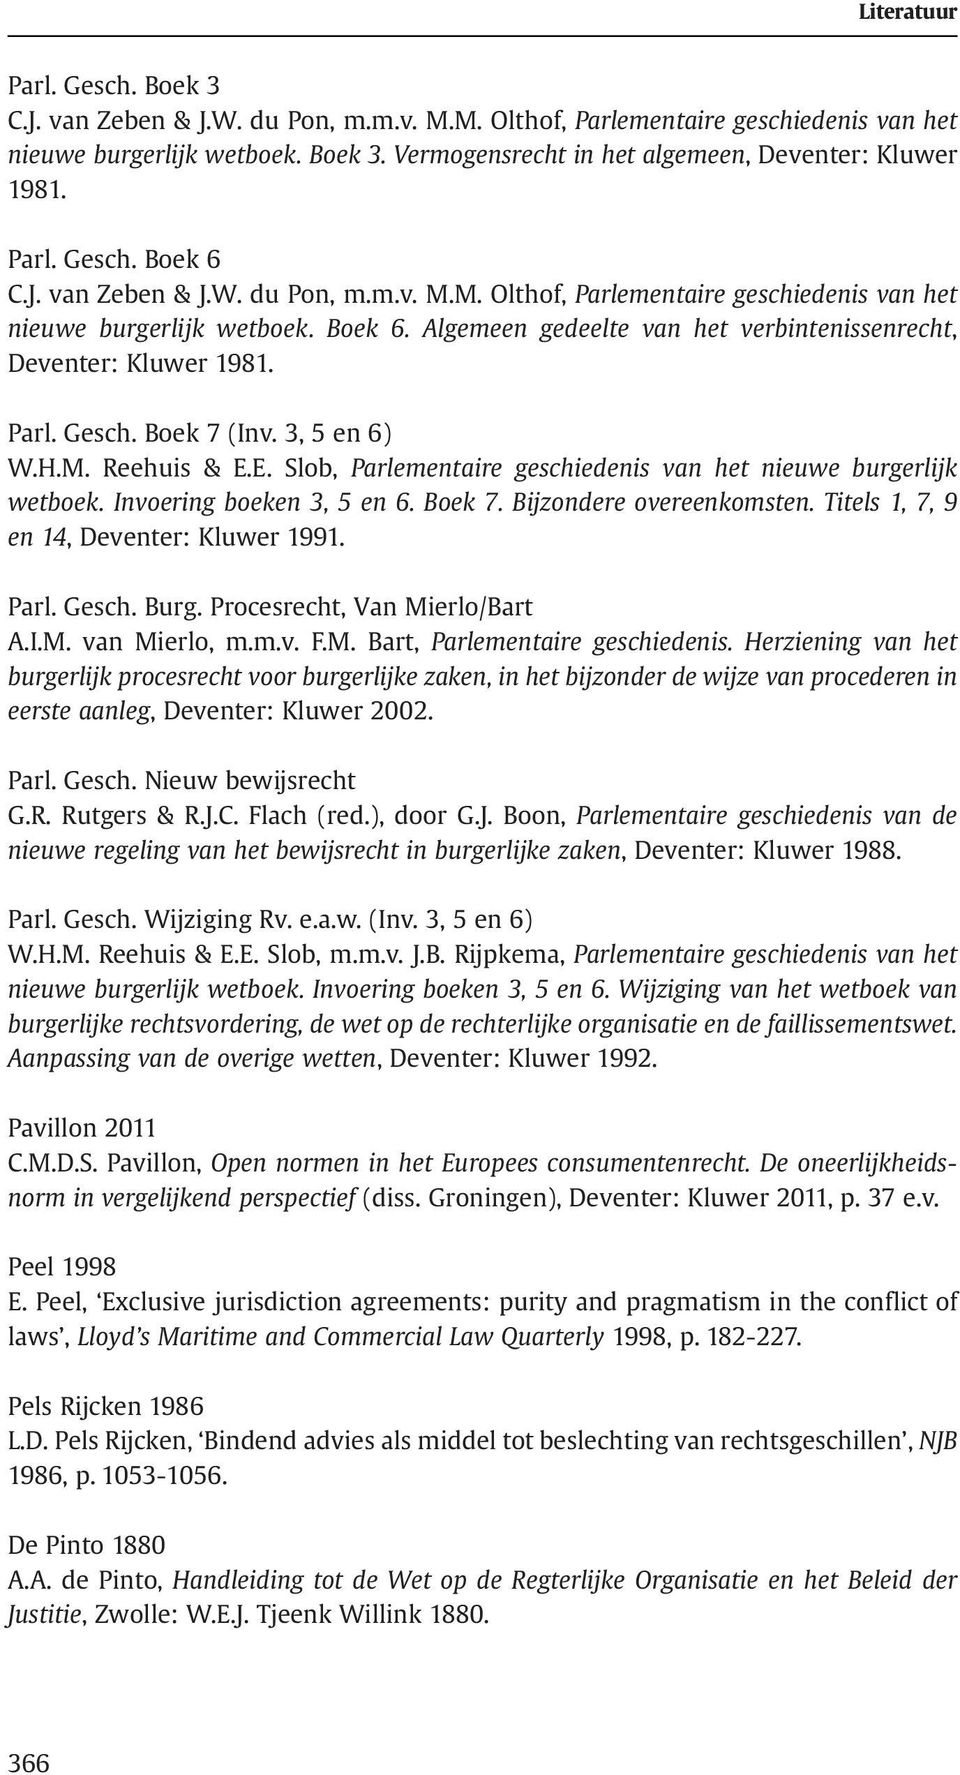 Boek 7 (Inv. 3, 5 en 6) W.H.M. Reehuis & E.E. Slob, Parlementaire geschiedenis van het nieuwe burgerlijk wetboek. Invoering boeken 3, 5 en 6. Boek 7. Bijzondere overeenkomsten.